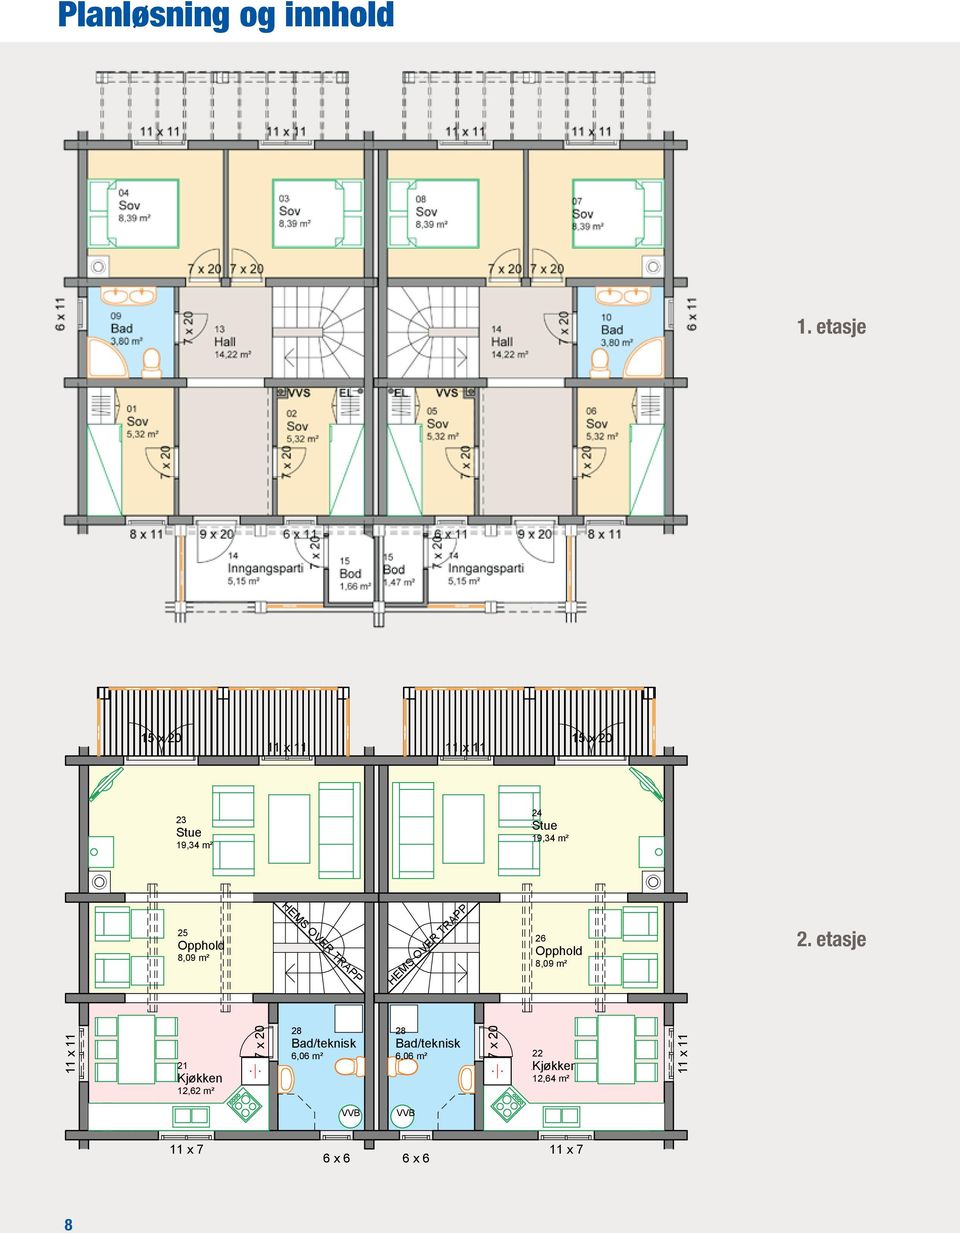 Opphold 8,9 m² HEMS OVER TRAPP HEMS OVER TRAPP 26 Opphold 8,9 m² 2.